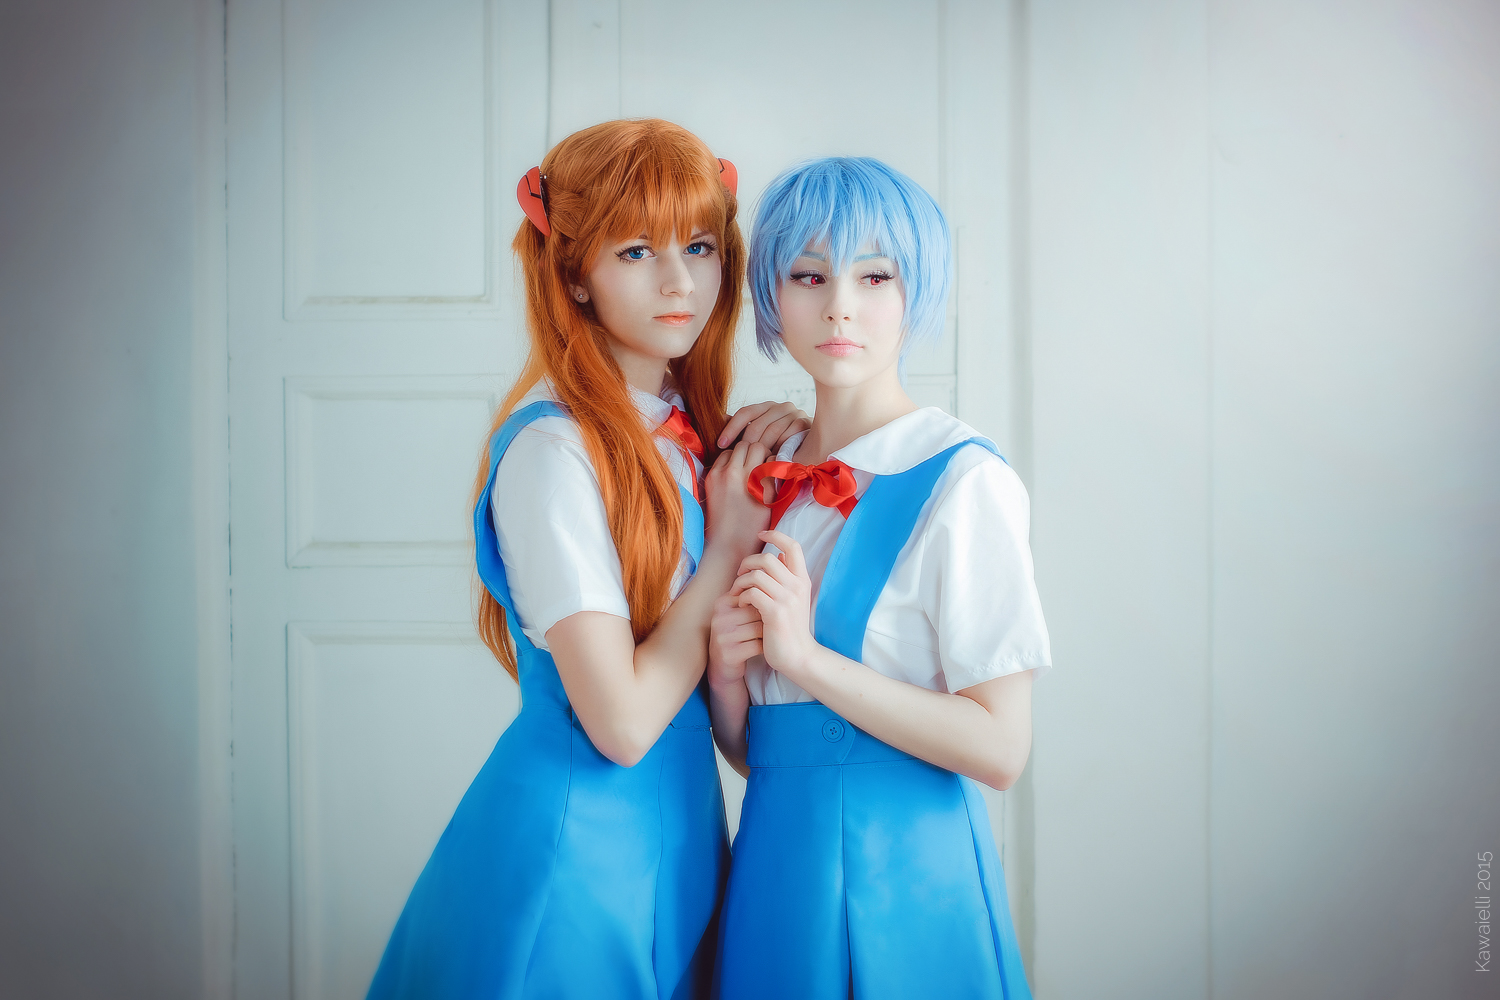 asuka And Rei cosplay By kawaielli